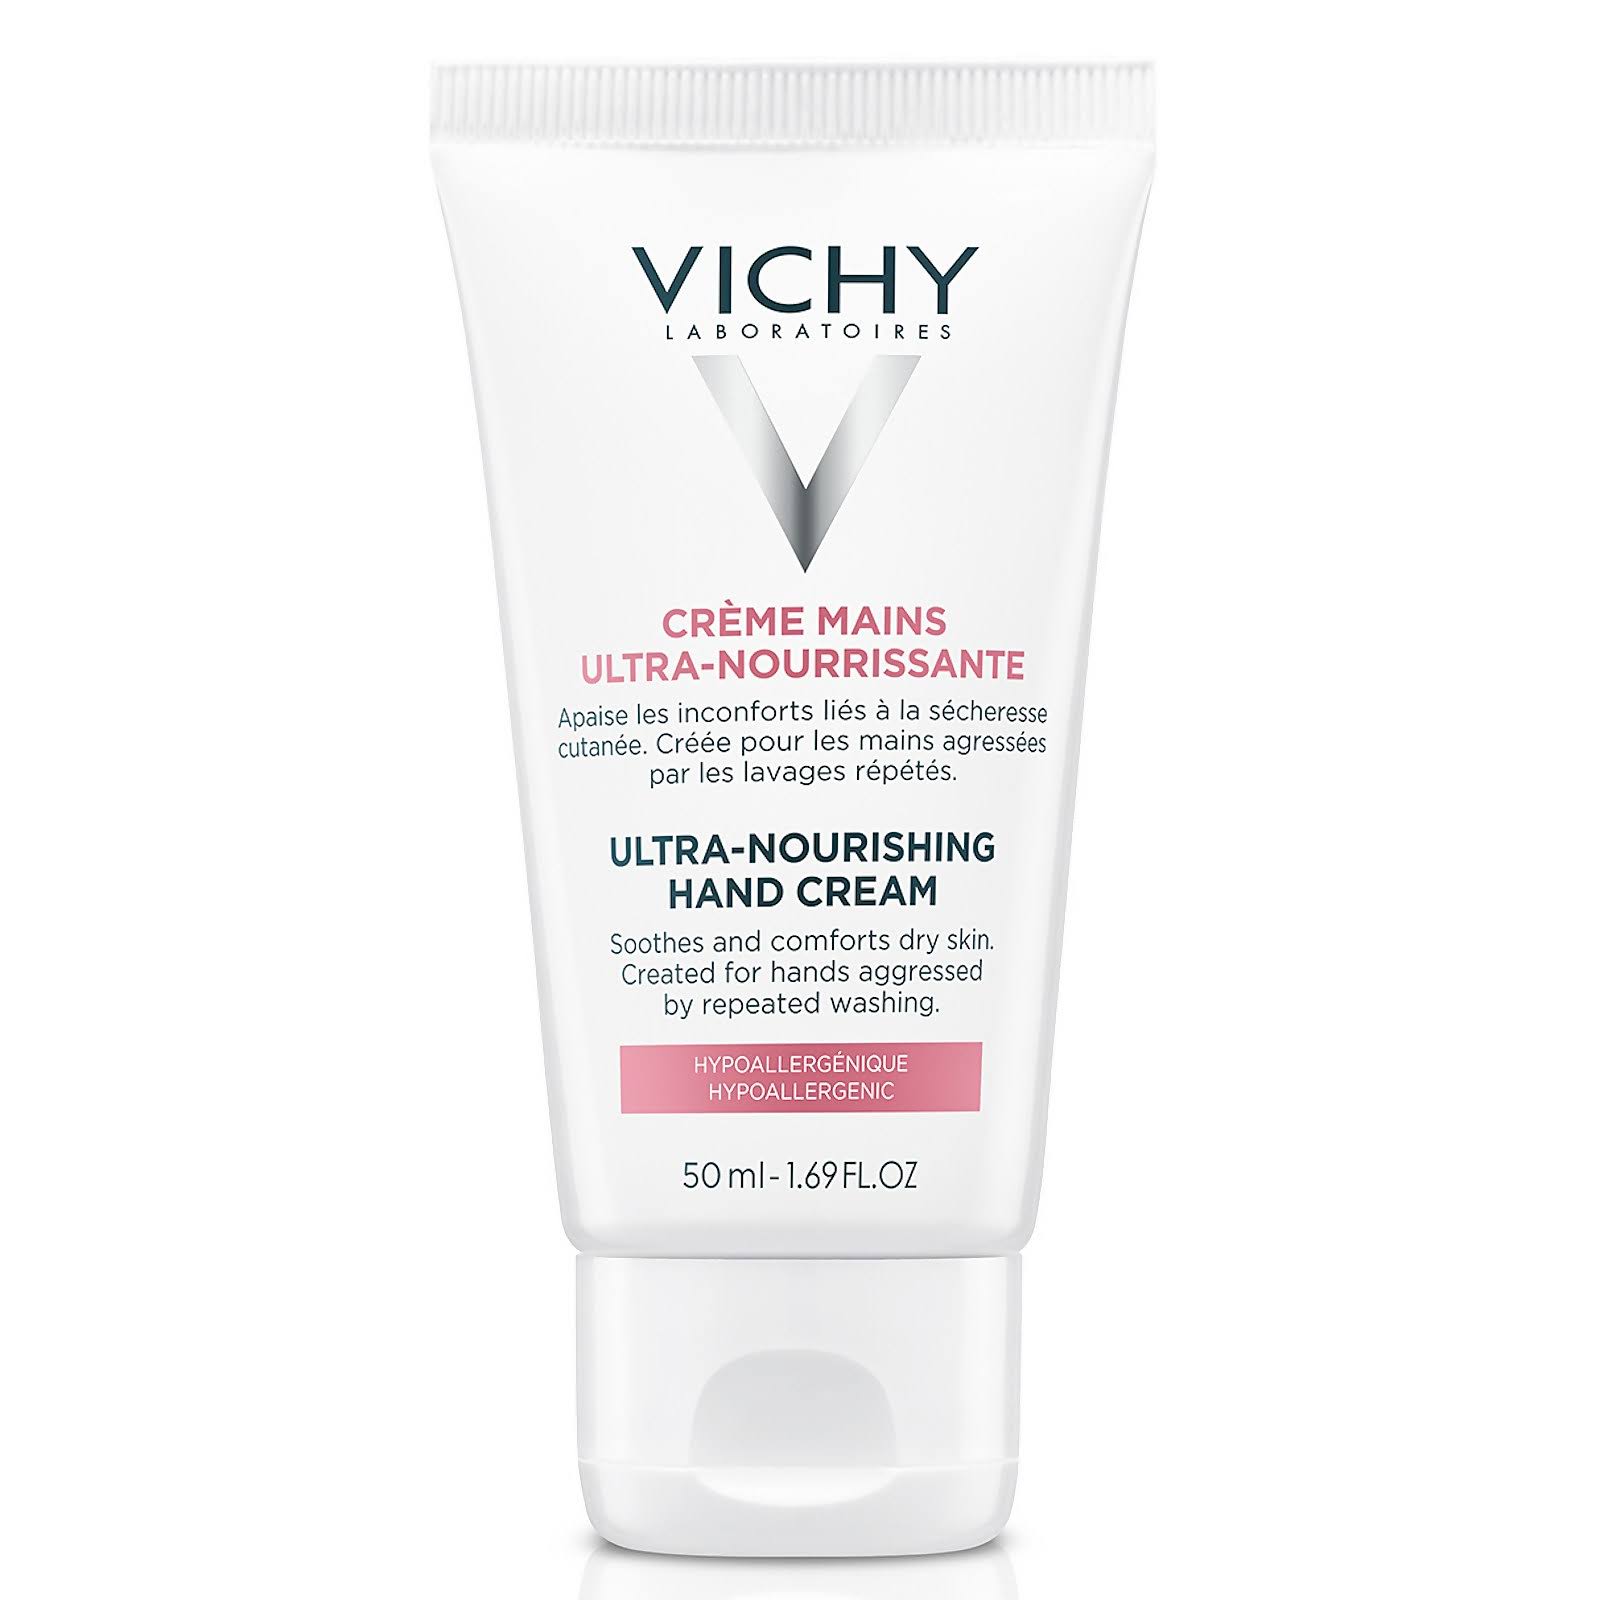 Vichy Ultra-Nourishing Hand Cream